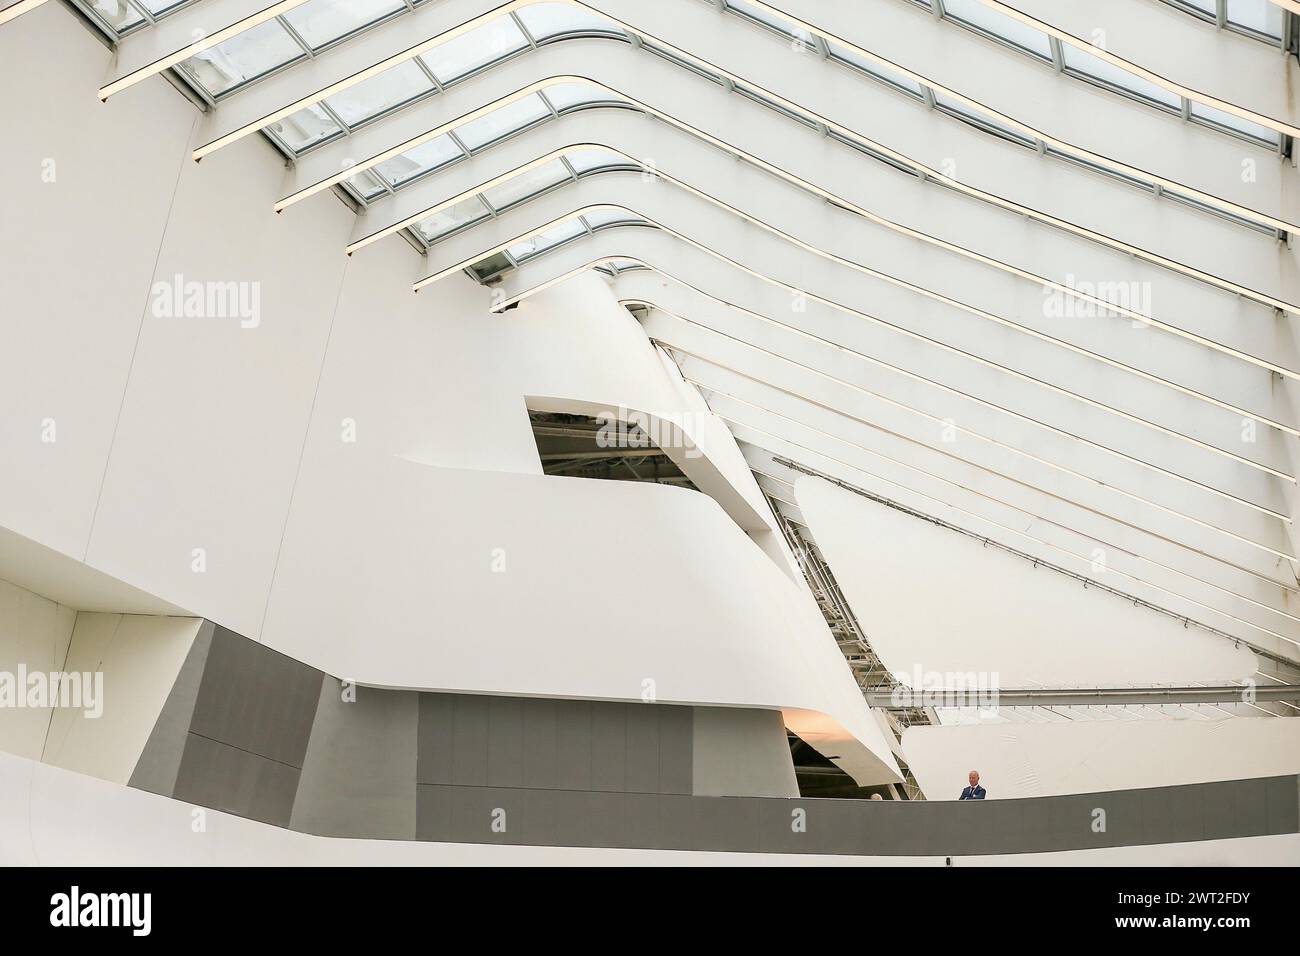 Vista interna della stazione ferroviaria ad alta velocità, TAV, di Afragola, progettata dall'architetto Zaha Hadid Foto Stock